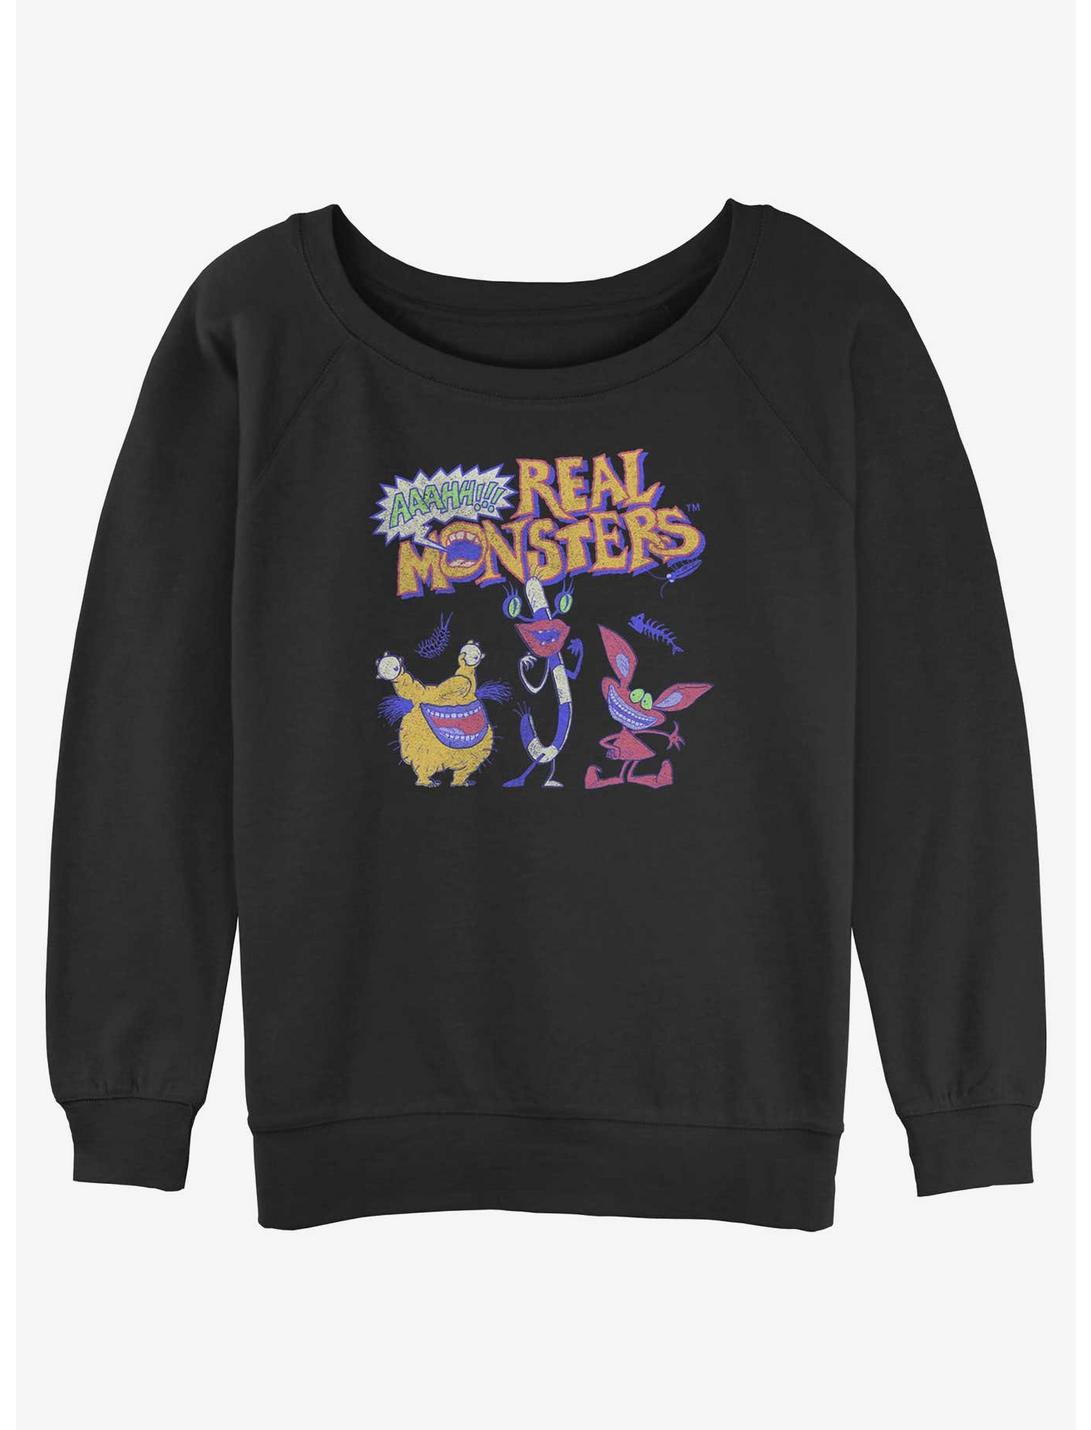 Nickelodeon Real Monsters Womens Slouchy Sweatshirt, BLACK, hi-res